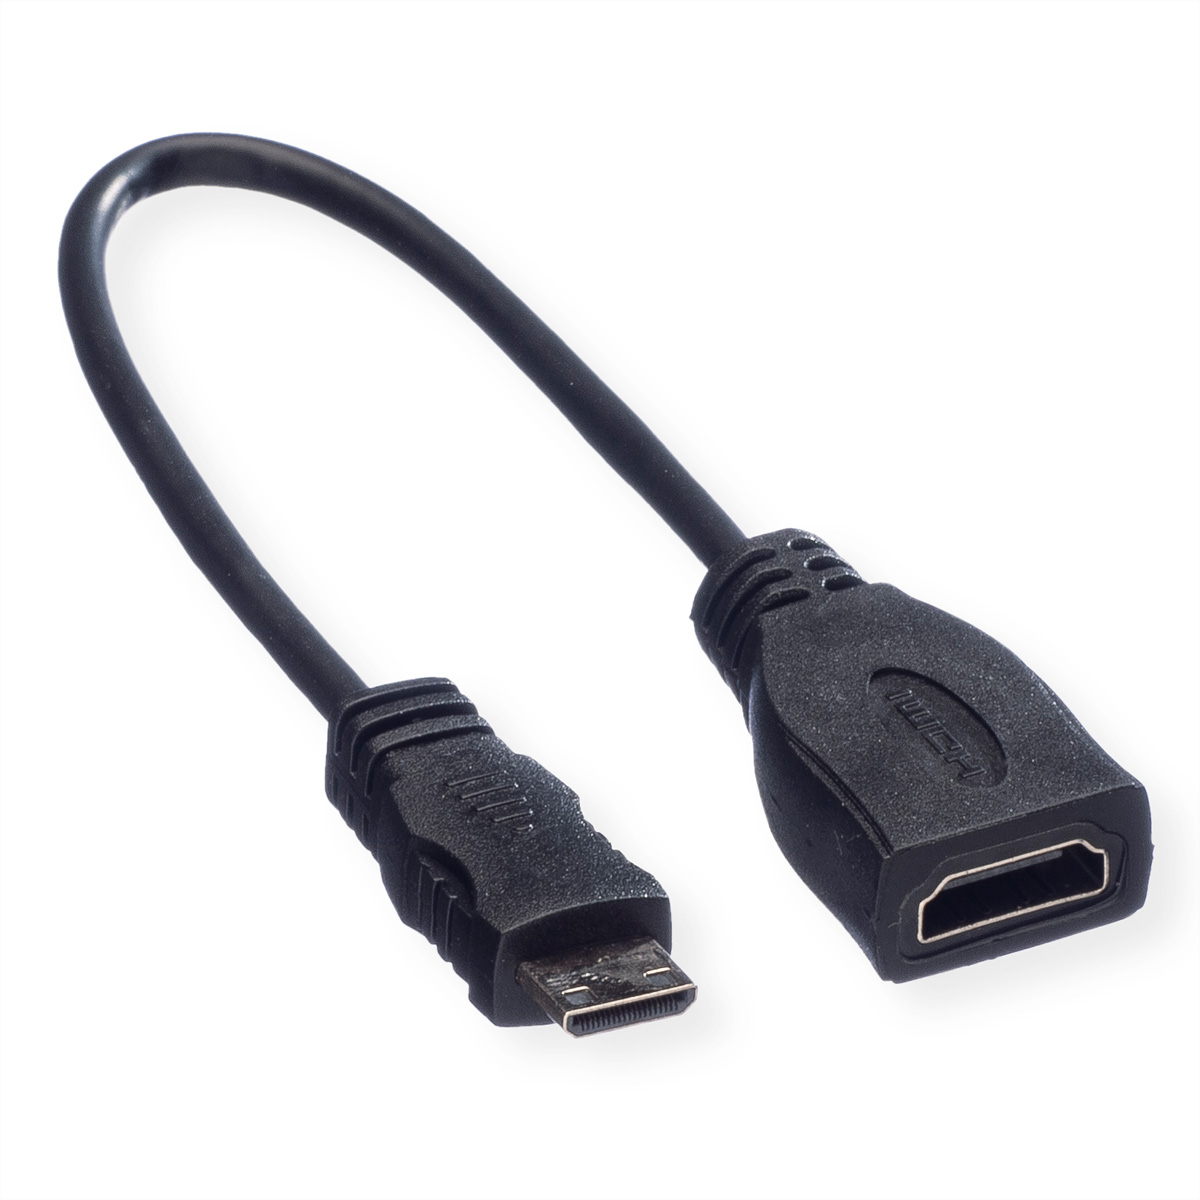 Speed ROLINE ST mit High Speed Mini Ethernet, with Kabel - HDMI Mini HDMI HDMI HDMI High Ethernet Kabel BU